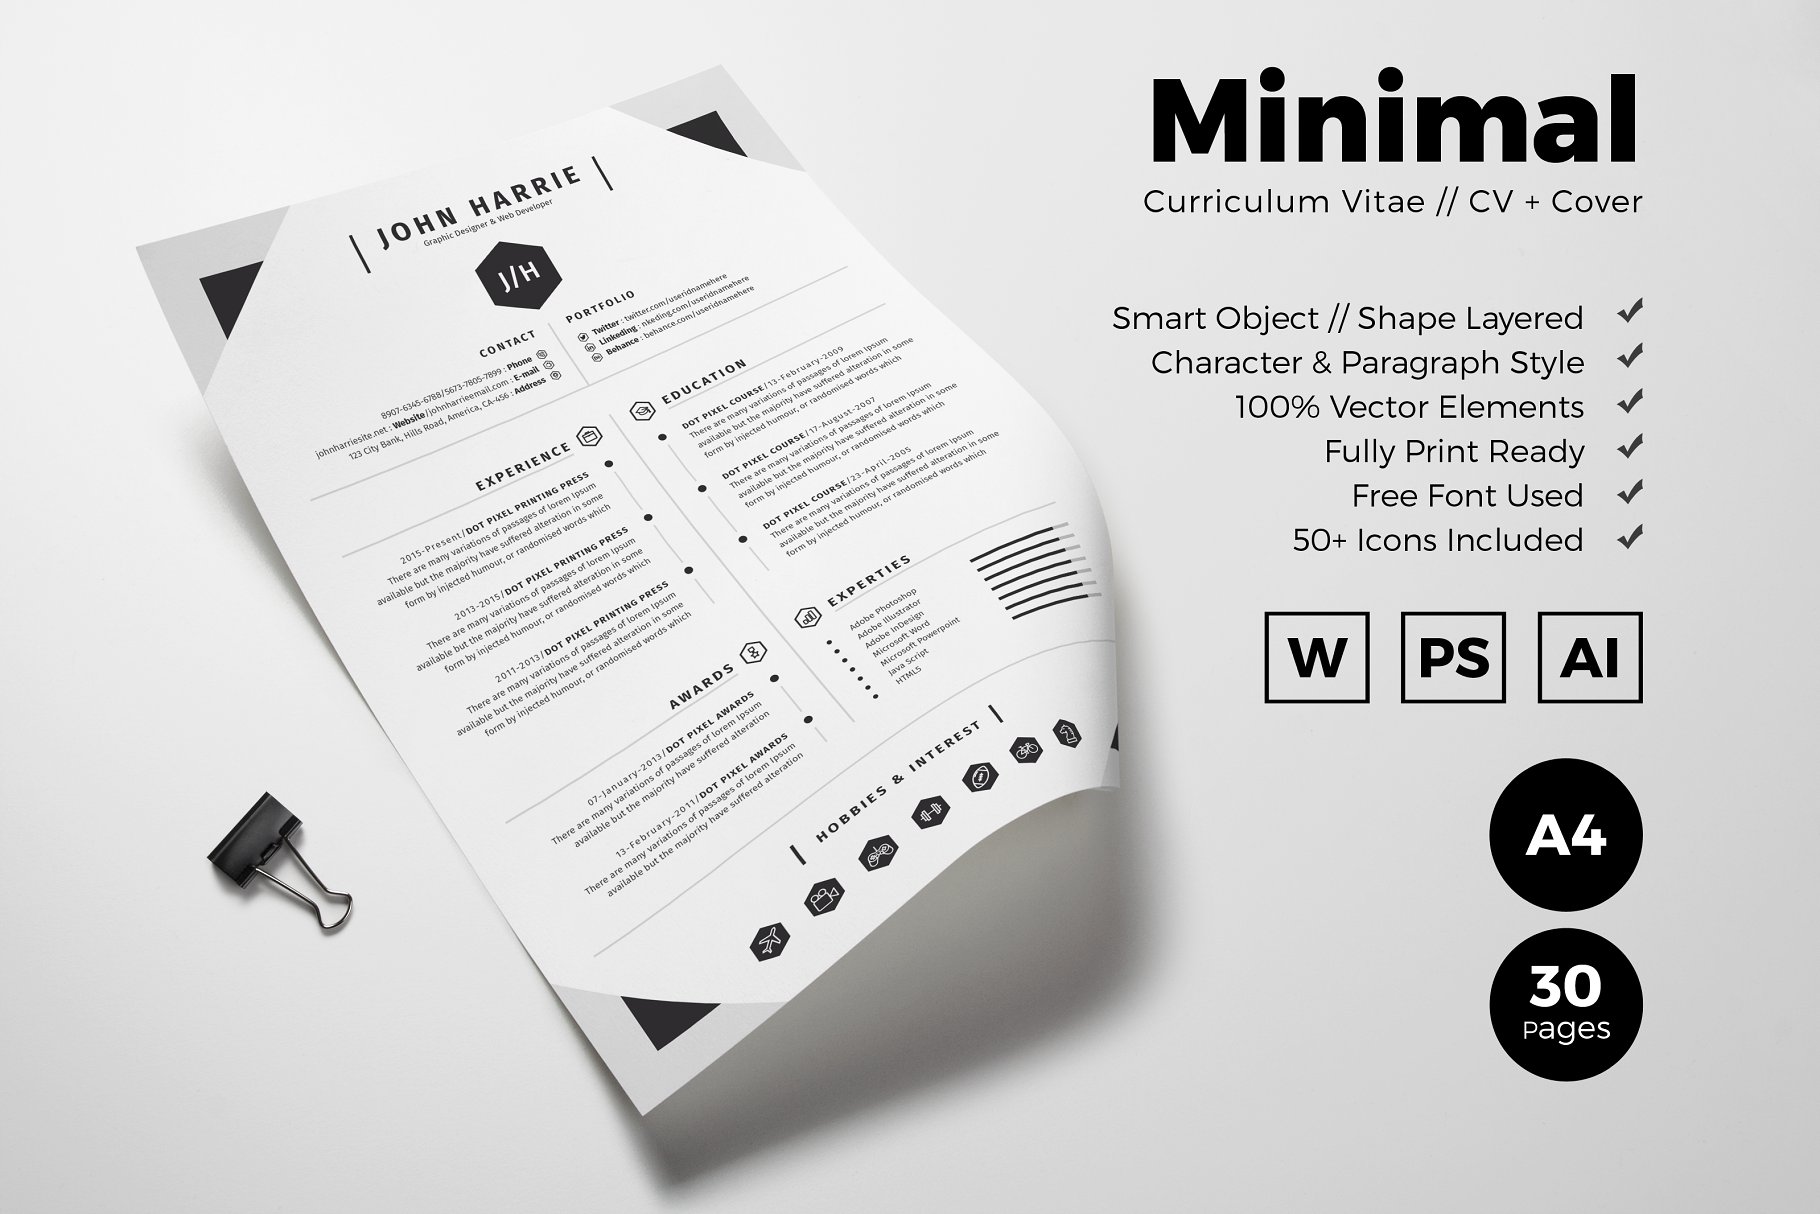 极简主义创意简历设计模板 Minimal Curriculum Vitae插图